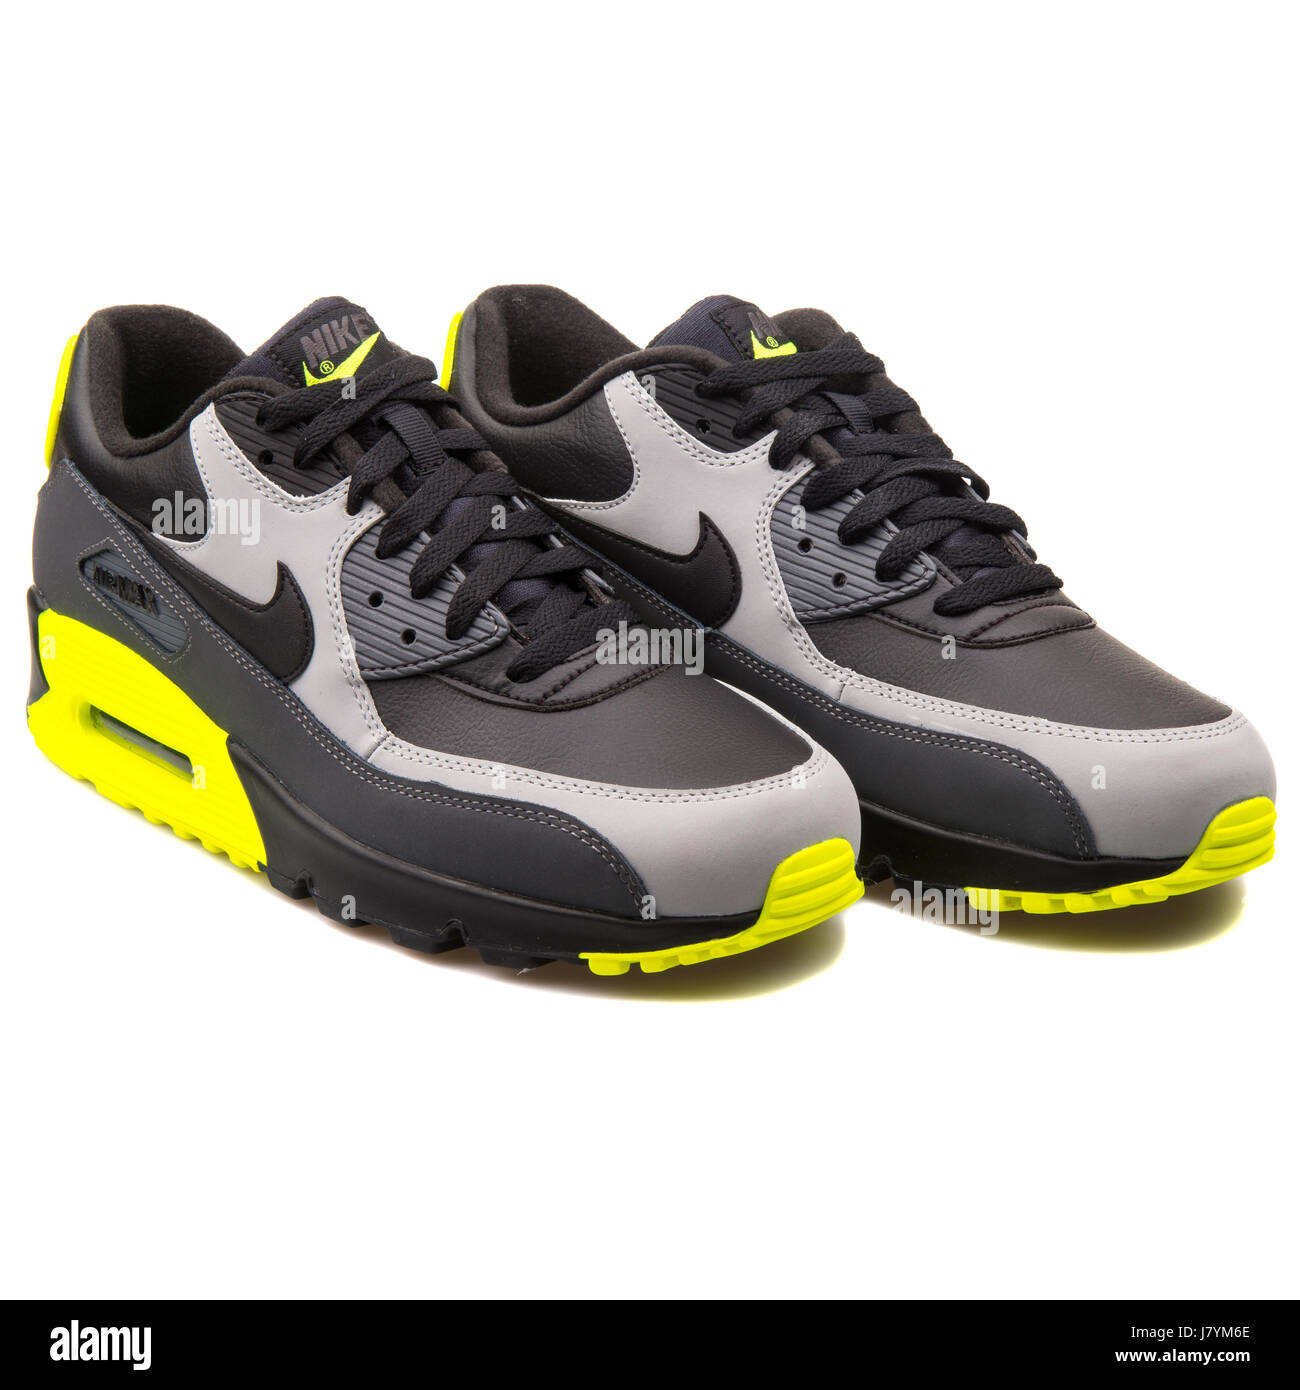 Nike Air Max 90 LTR schwarz Turnschuhe grau und Gelb Herren Sport -  652980-007 Stockfotografie - Alamy